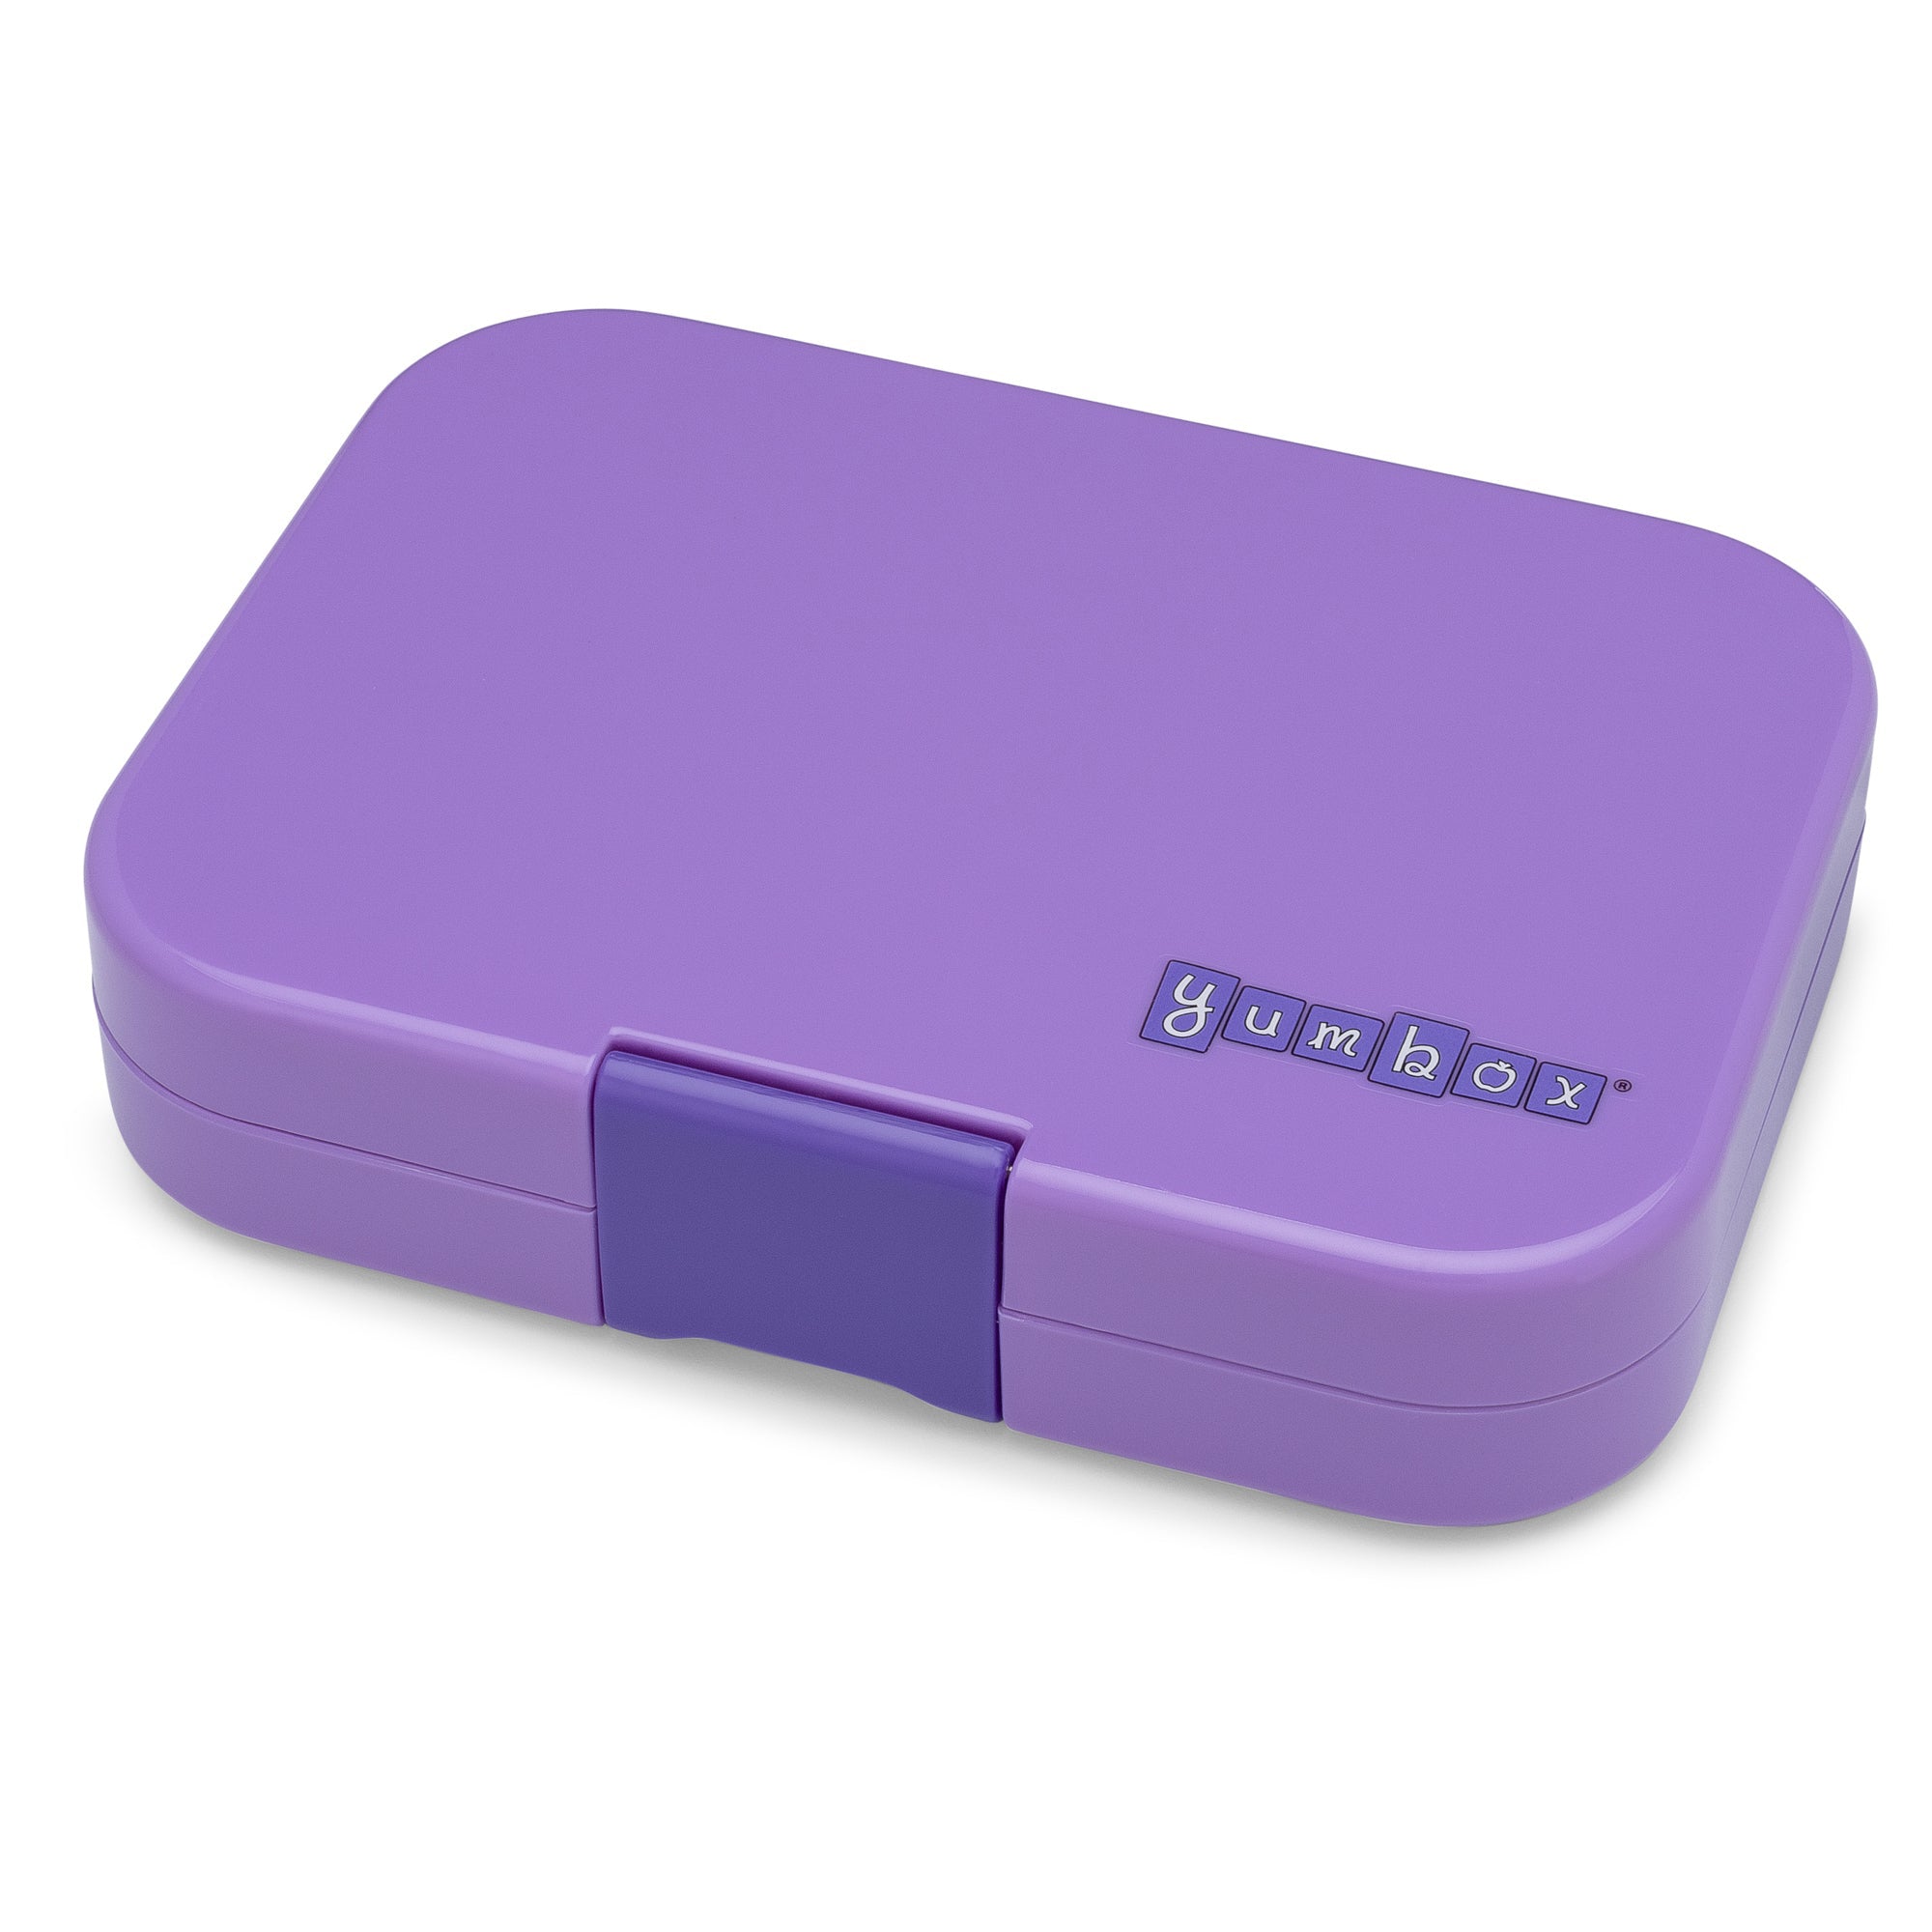 yumbox-panino-4-compartment-lunch-box-dreamy-purple-panda-yumb-dpii202110p- (3)